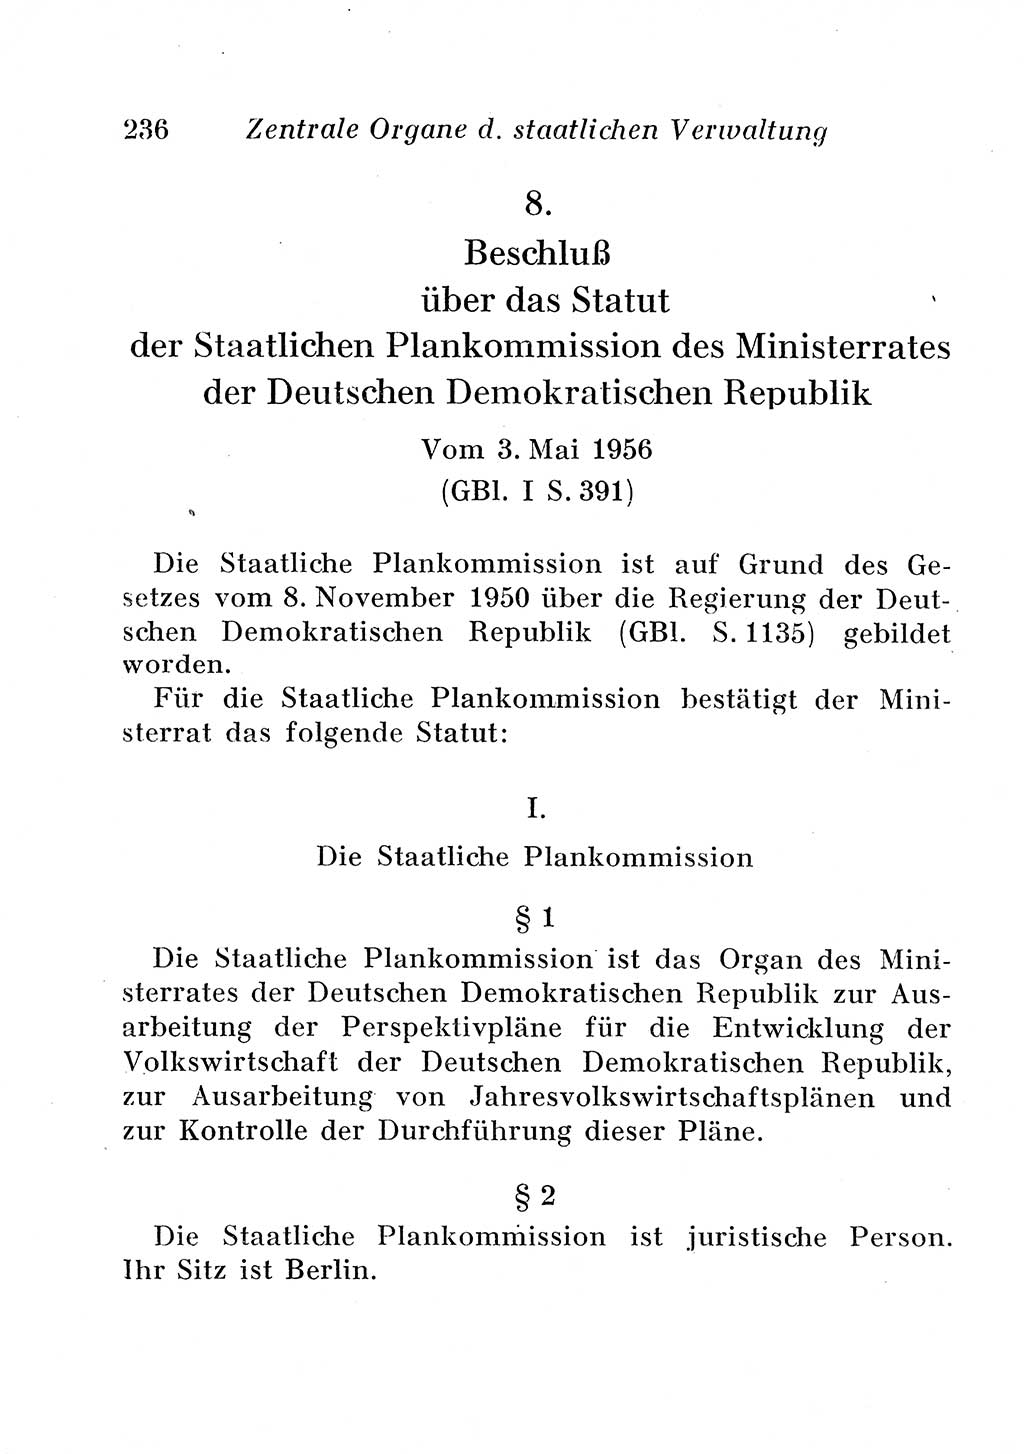 Staats- und verwaltungsrechtliche Gesetze der Deutschen Demokratischen Republik (DDR) 1958, Seite 236 (StVerwR Ges. DDR 1958, S. 236)